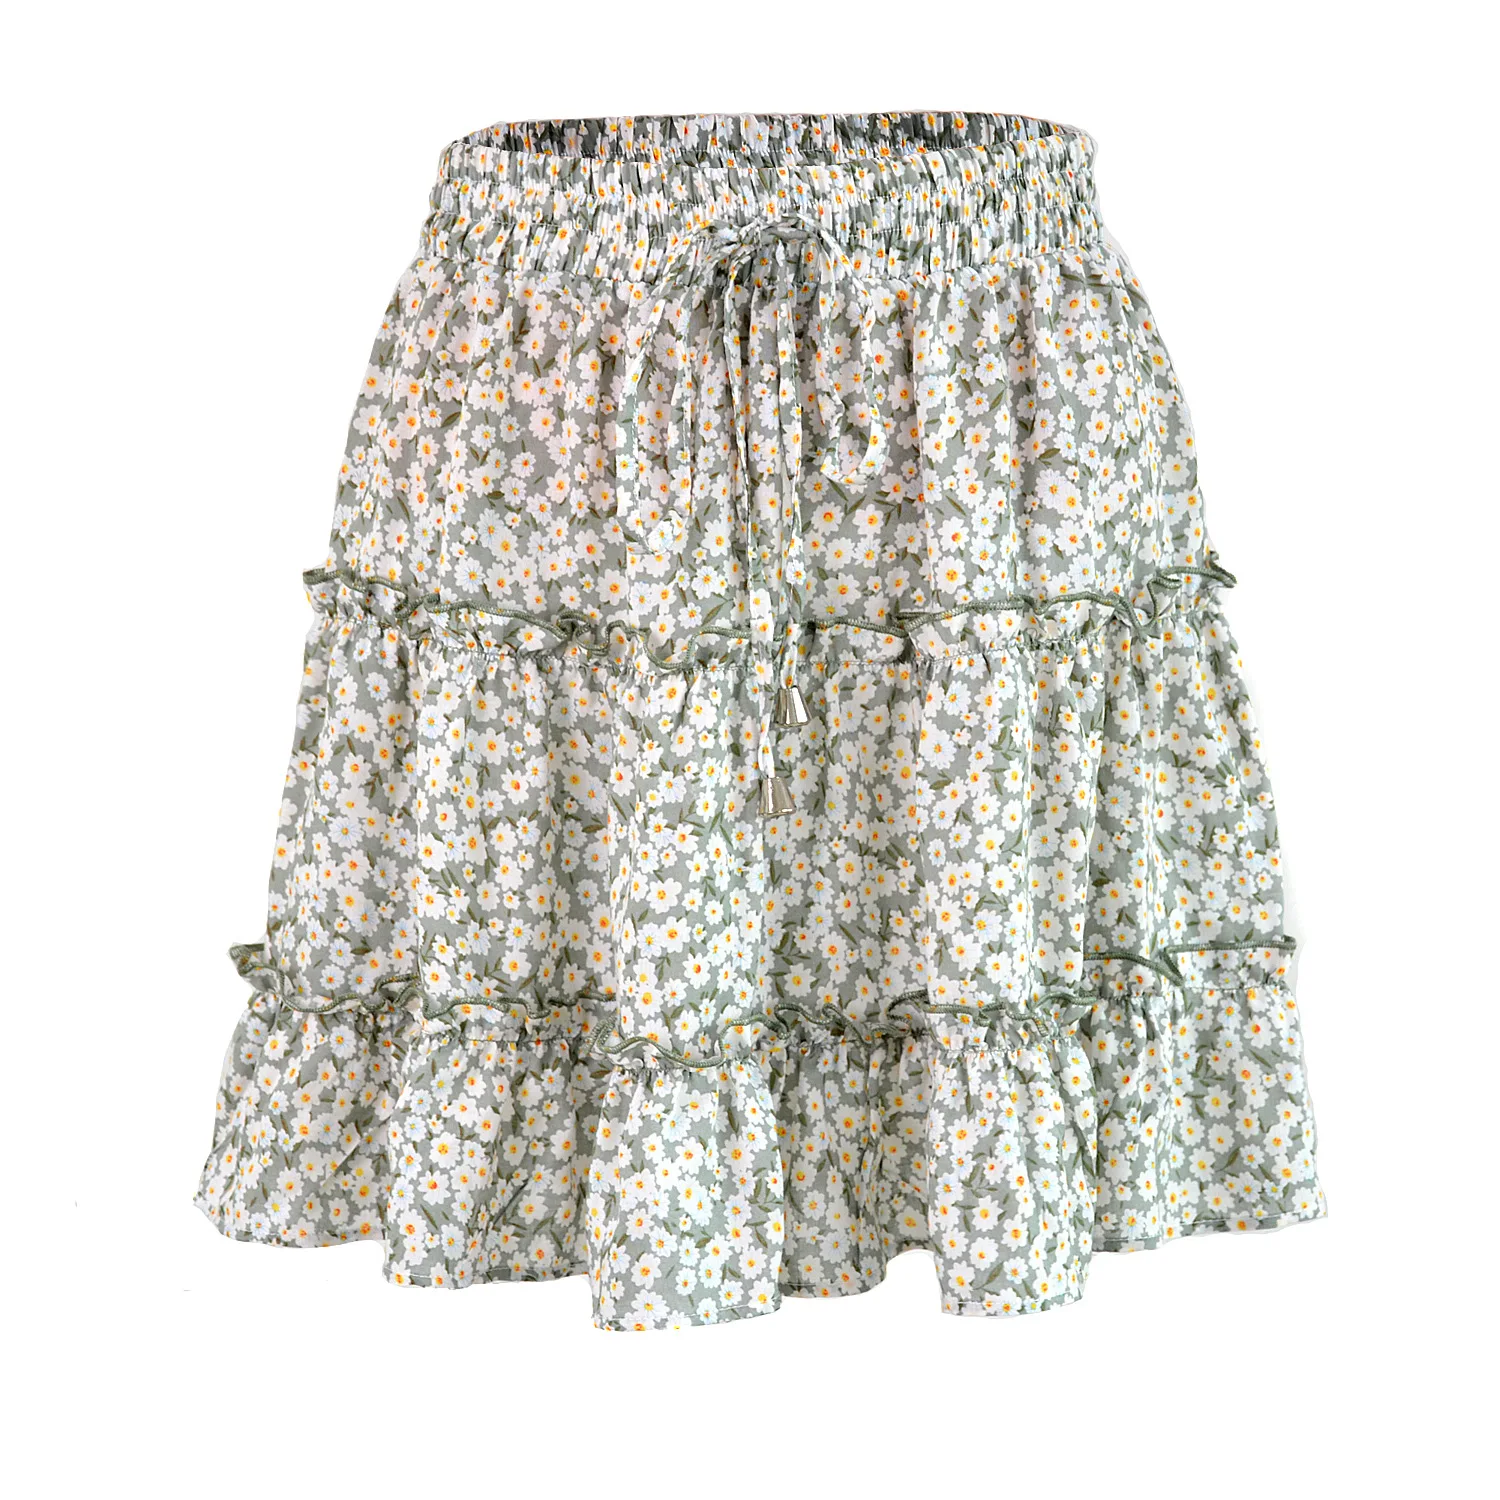 Laamei модные юбки женские эластичный шнурок на талии мини юбка Повседневная юбка в складку тонкий горошек печатных свободная пляжная одежда - Цвет: Green-Flower